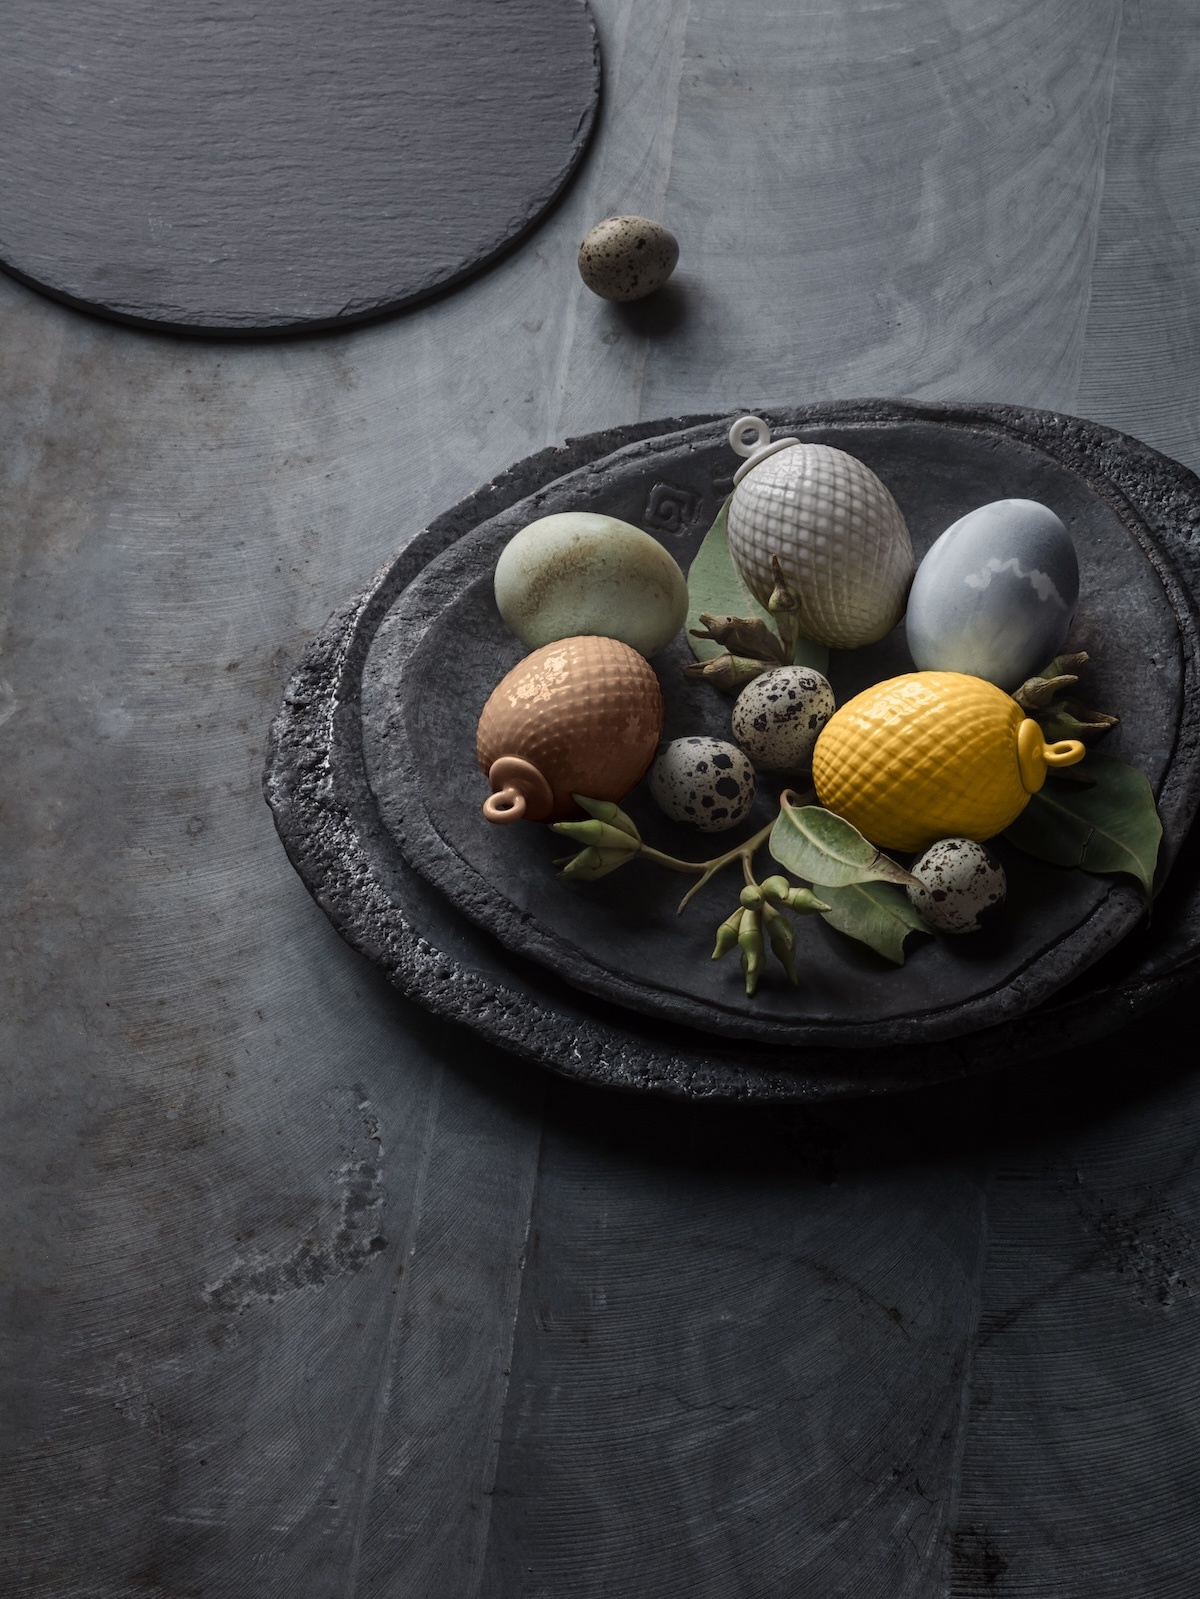 Tischdekoration zu Ostern: Tipps fürs Osterfrühstück